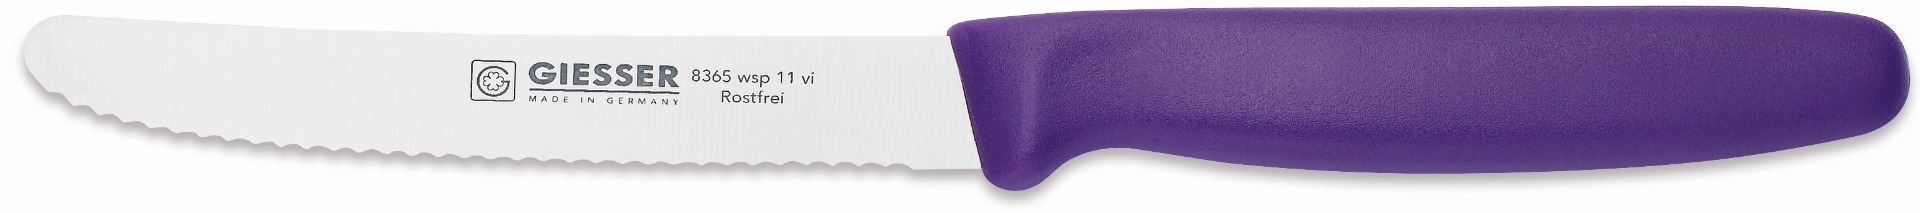 Allzweckmesser Giesser 11 cm - violett